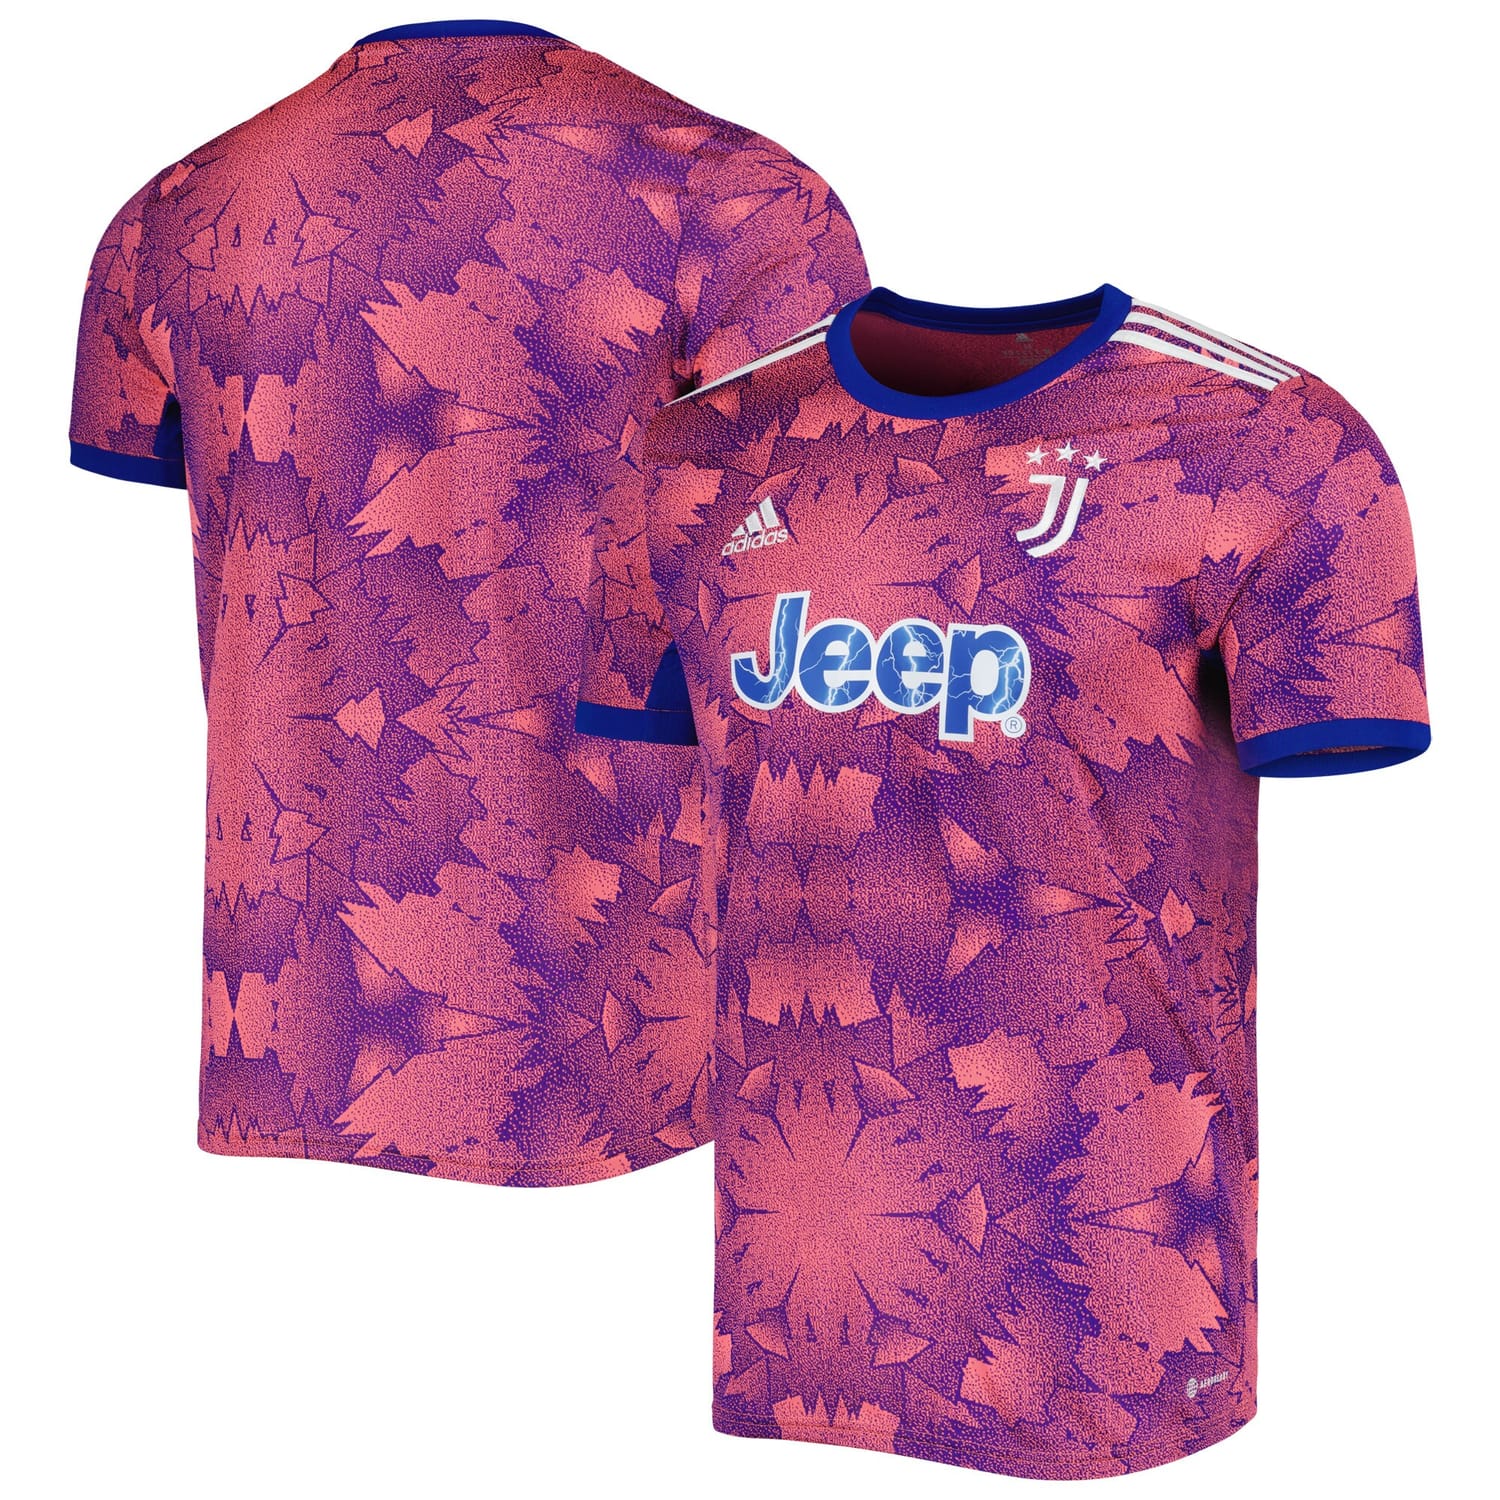 Serie A Juventus Third Jersey Shirt Pink/Blue 2022-23 for Men